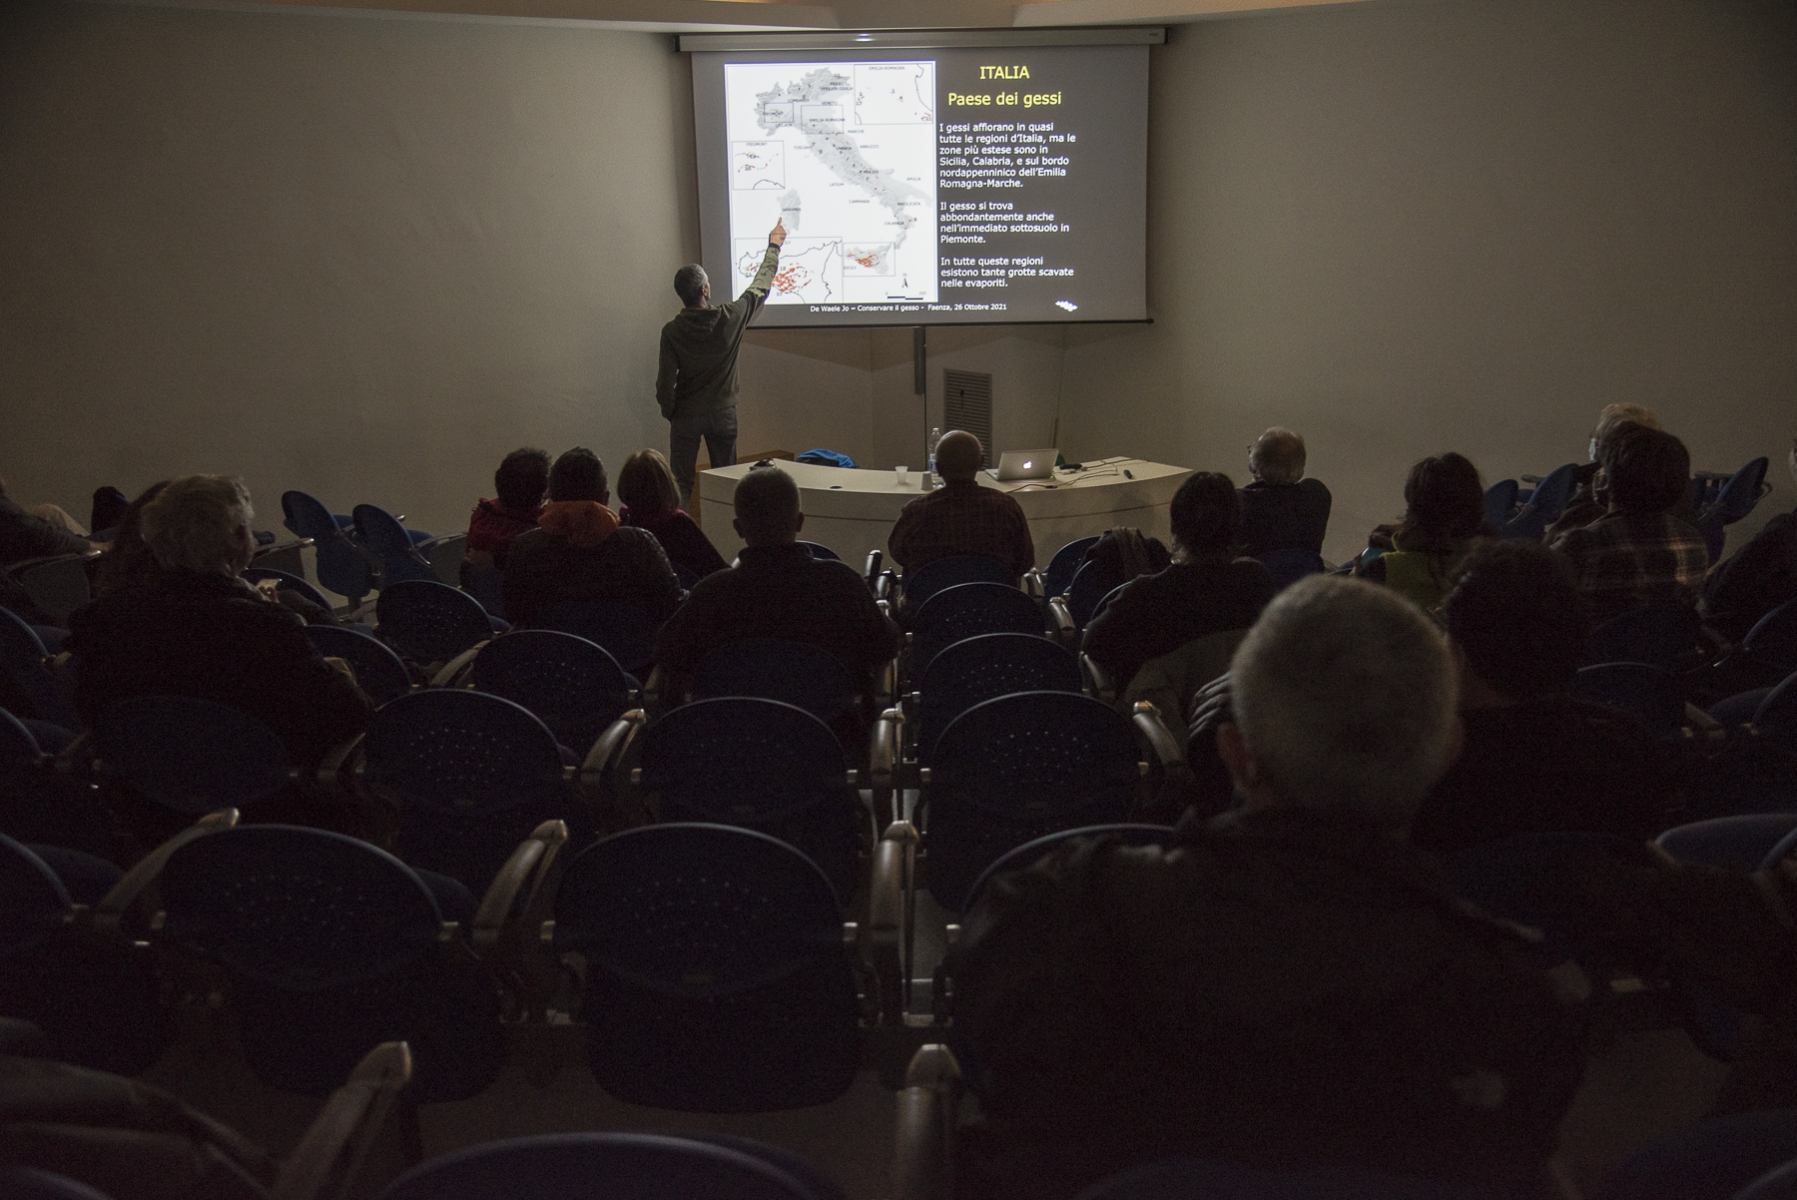 Faenza, Museo Malmerendi, 26 ottobre 2021. Assemblea pubblica per la discussione sulla pubblicazione dello studio commissionato dalla Regione ER sulla cava di Monte Tondo.